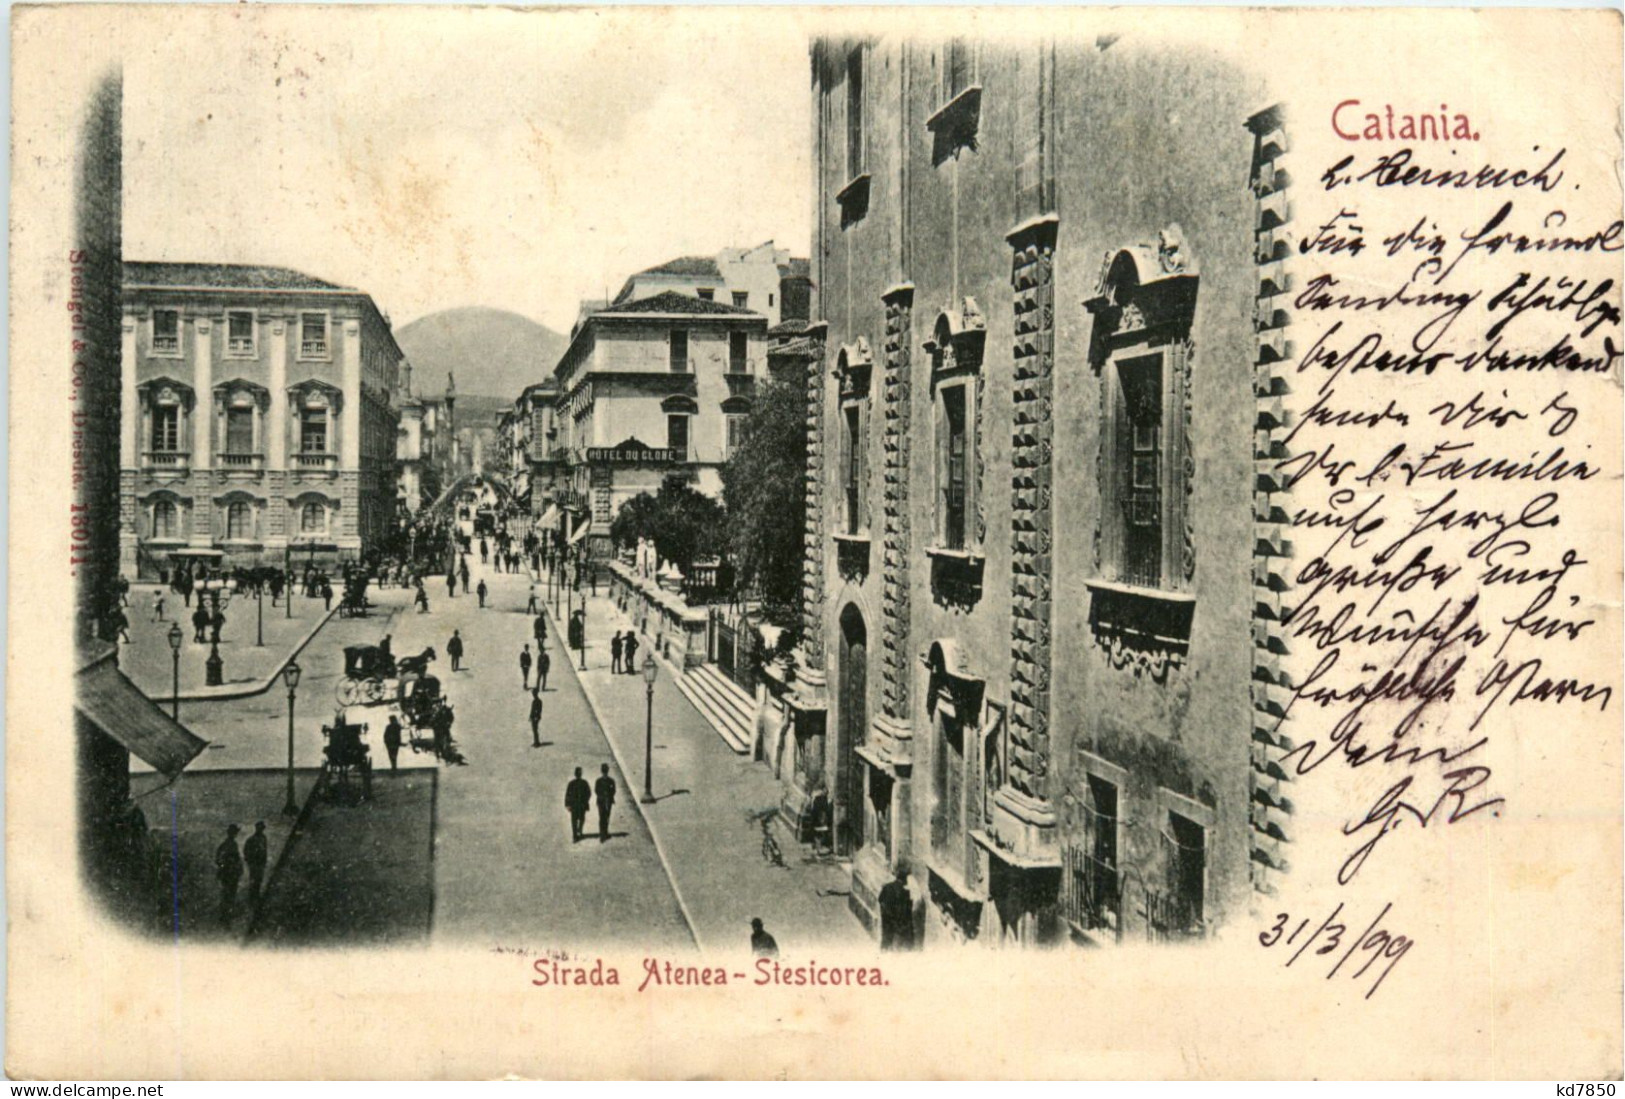 Catania - Sirada Atenea-Stesicorea - Catania